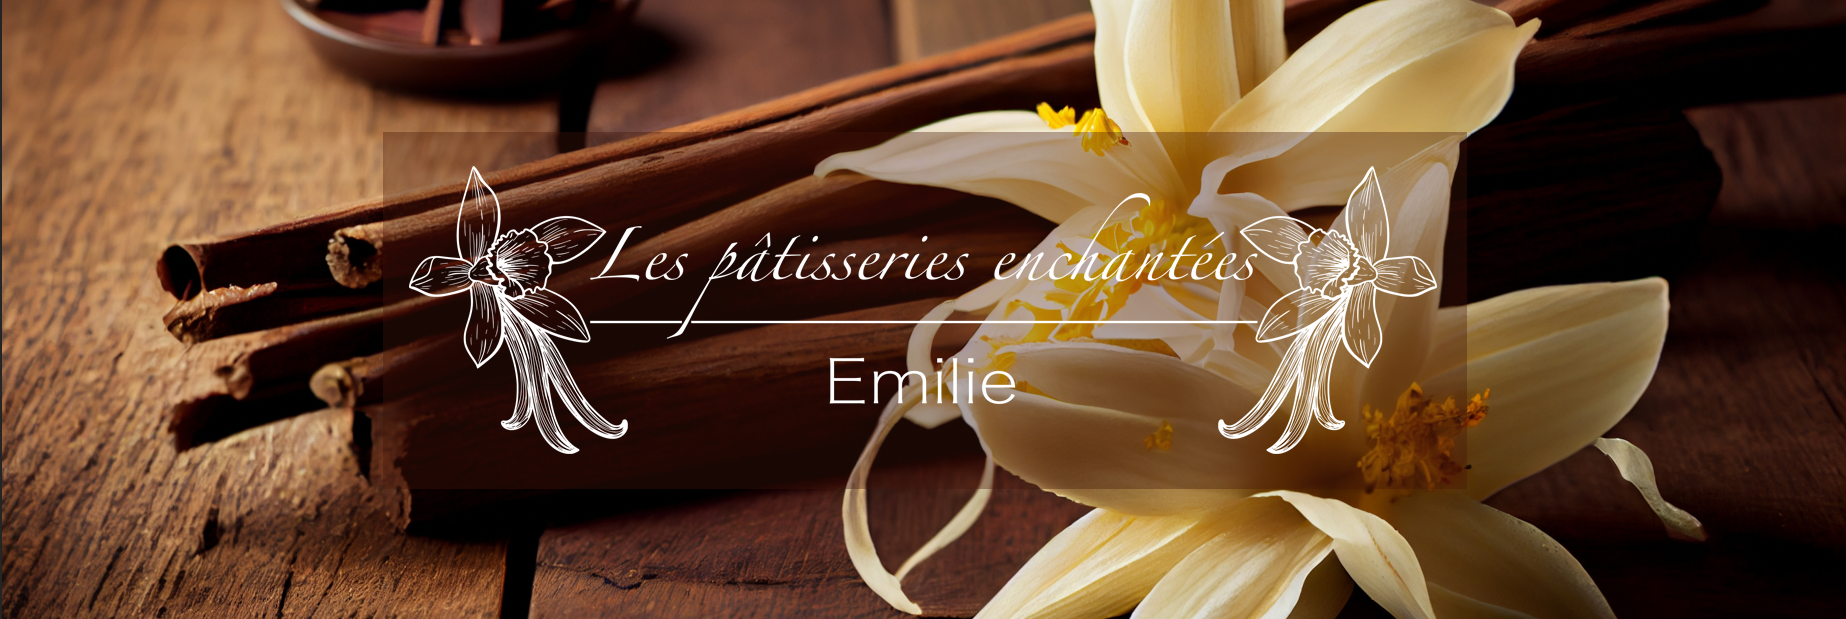 Les pâtisseries enchantées d'Emilie - www.patisseries-enchantees.fr